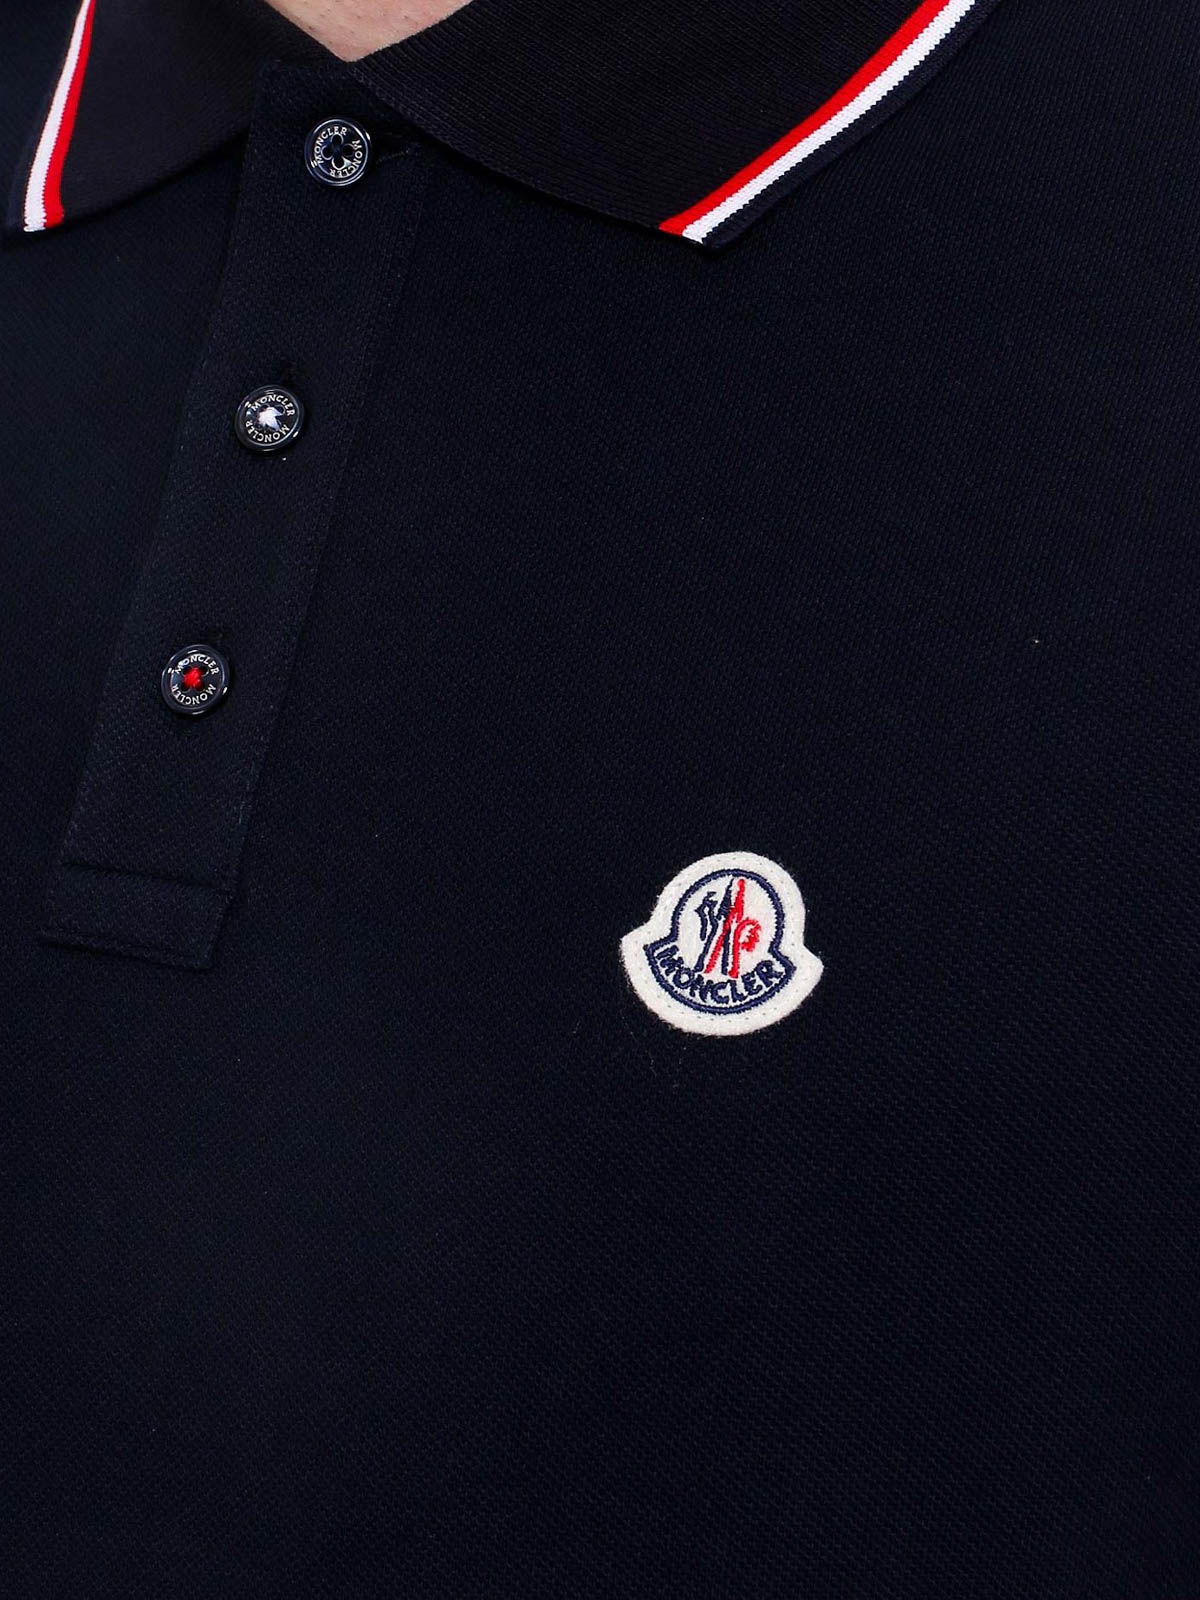 Polo shirts Moncler - Piqué polo - 8A7030084556773 | Shop online 